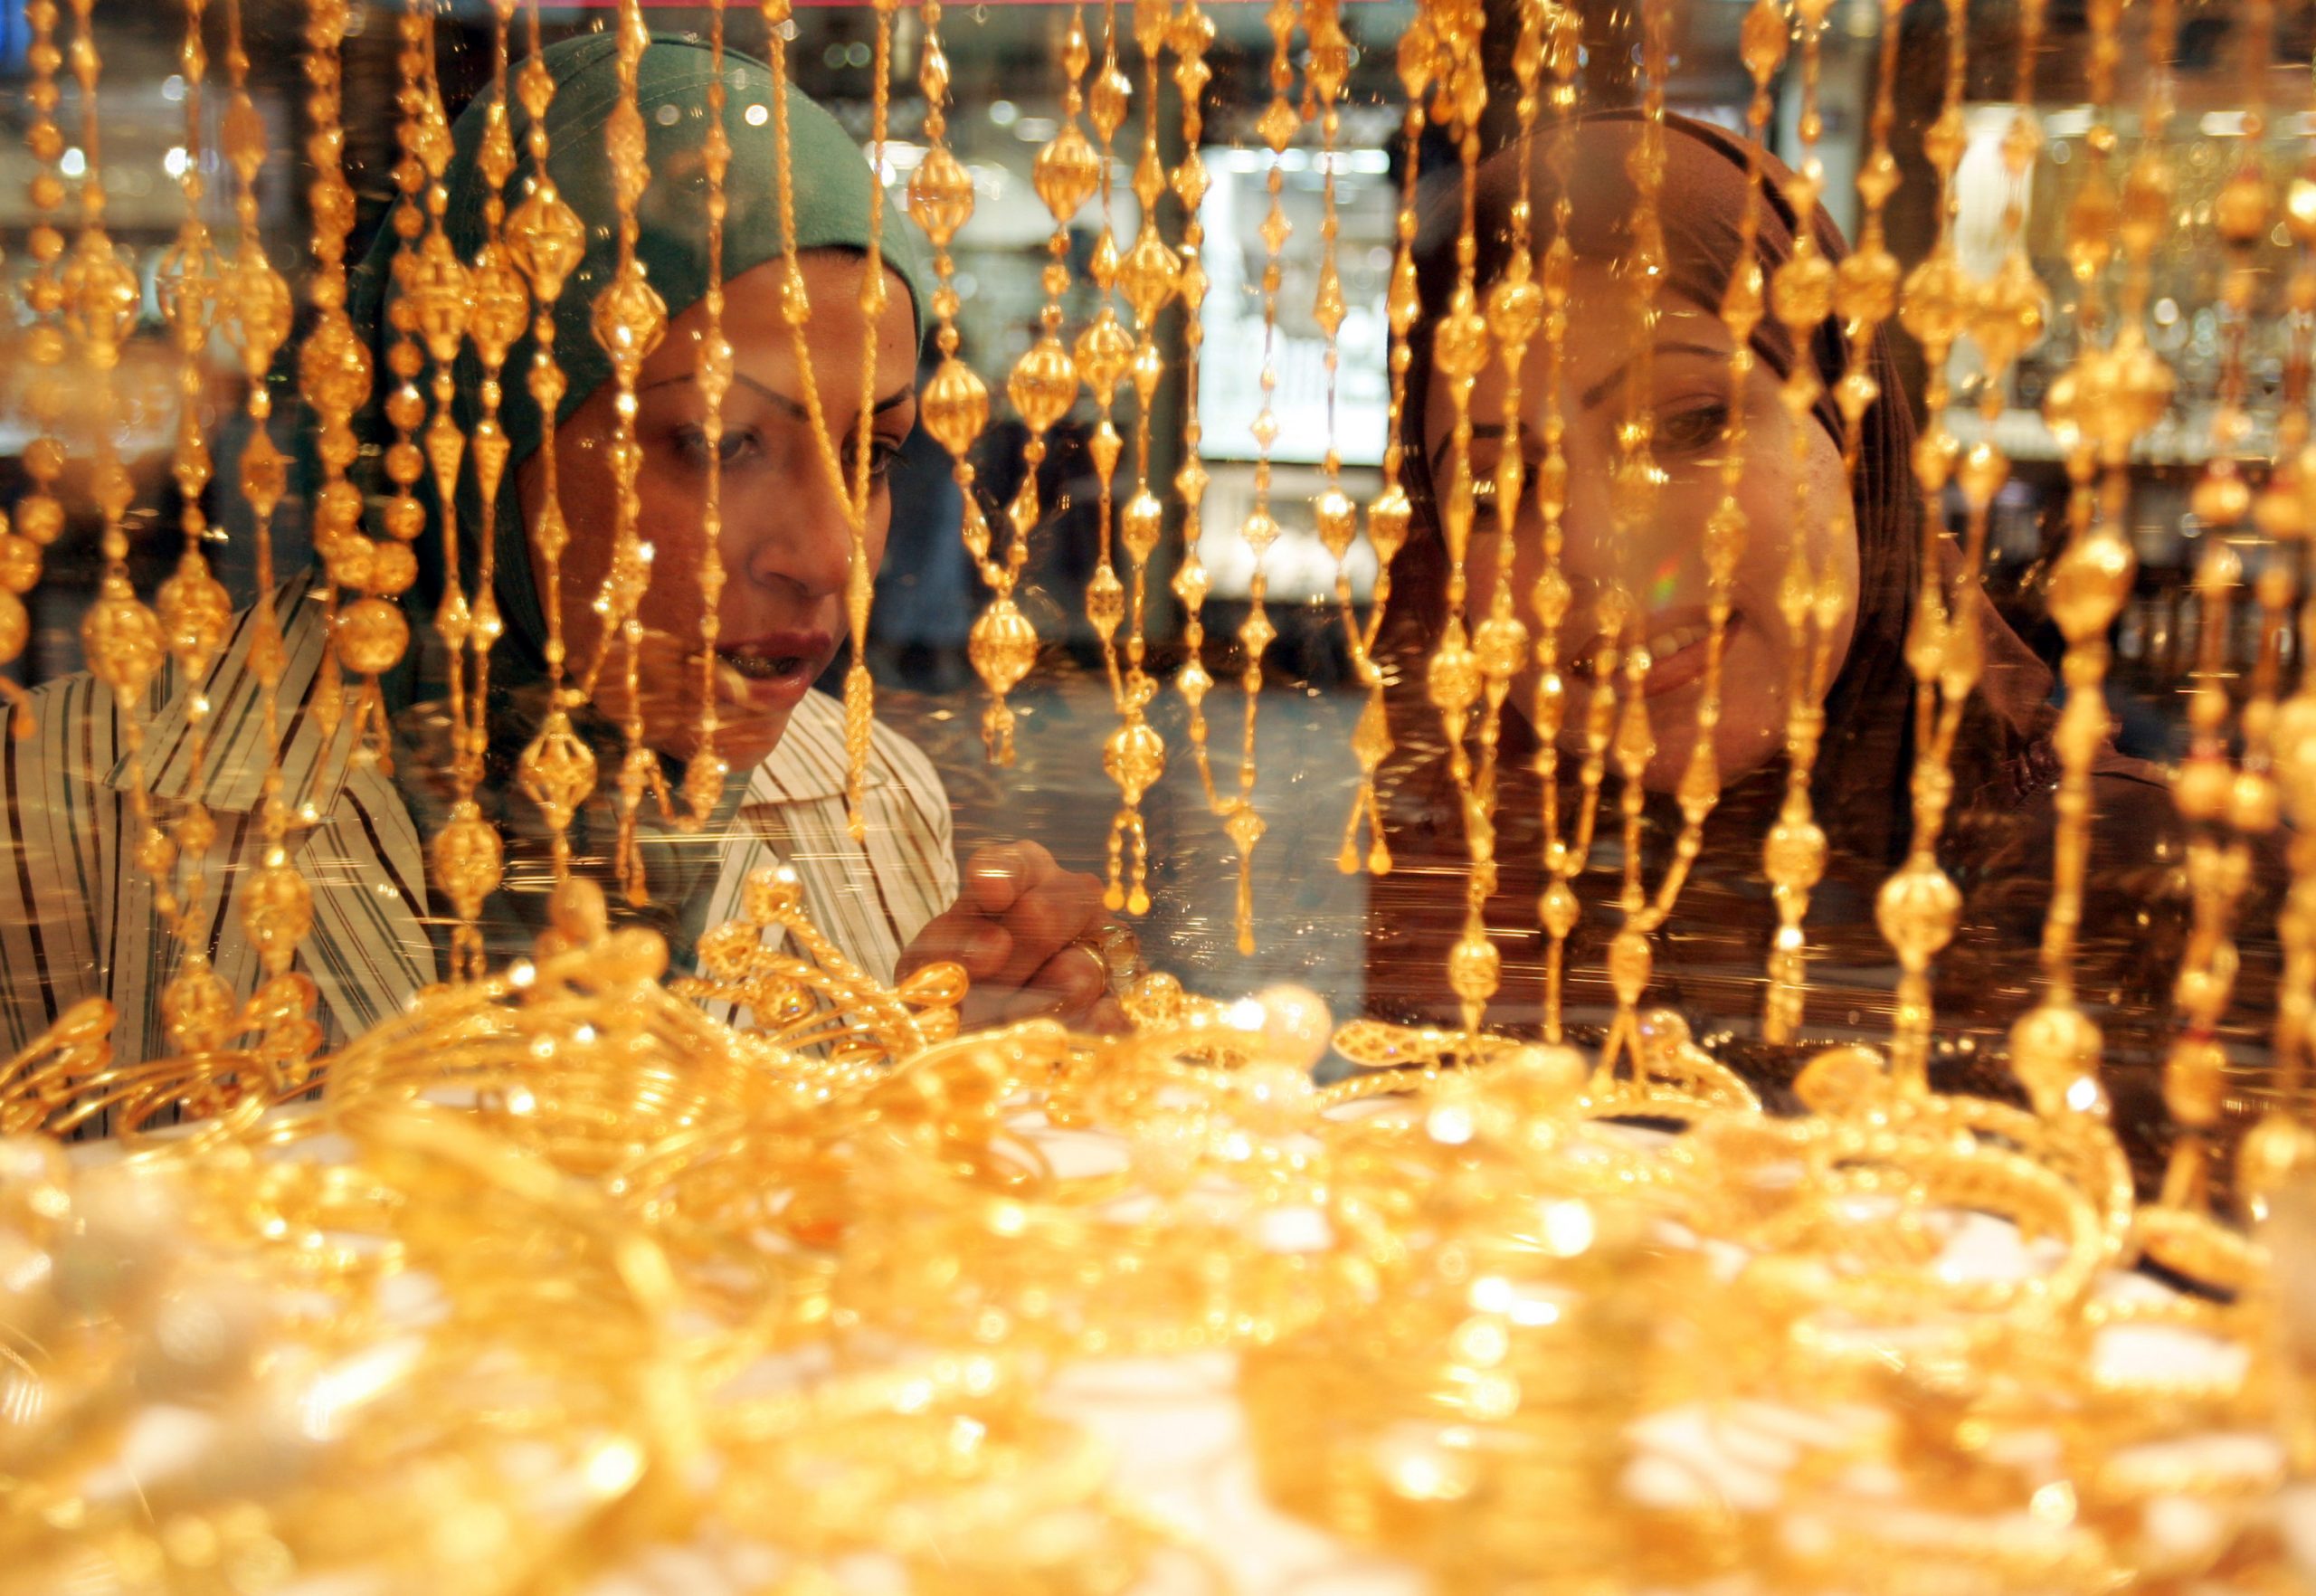 سعر الذهب اليوم في مصر 27- 12 -2020 وتوقعات الخبراء لأسعار المعدن الأصفر خلال الأيام المقبلة